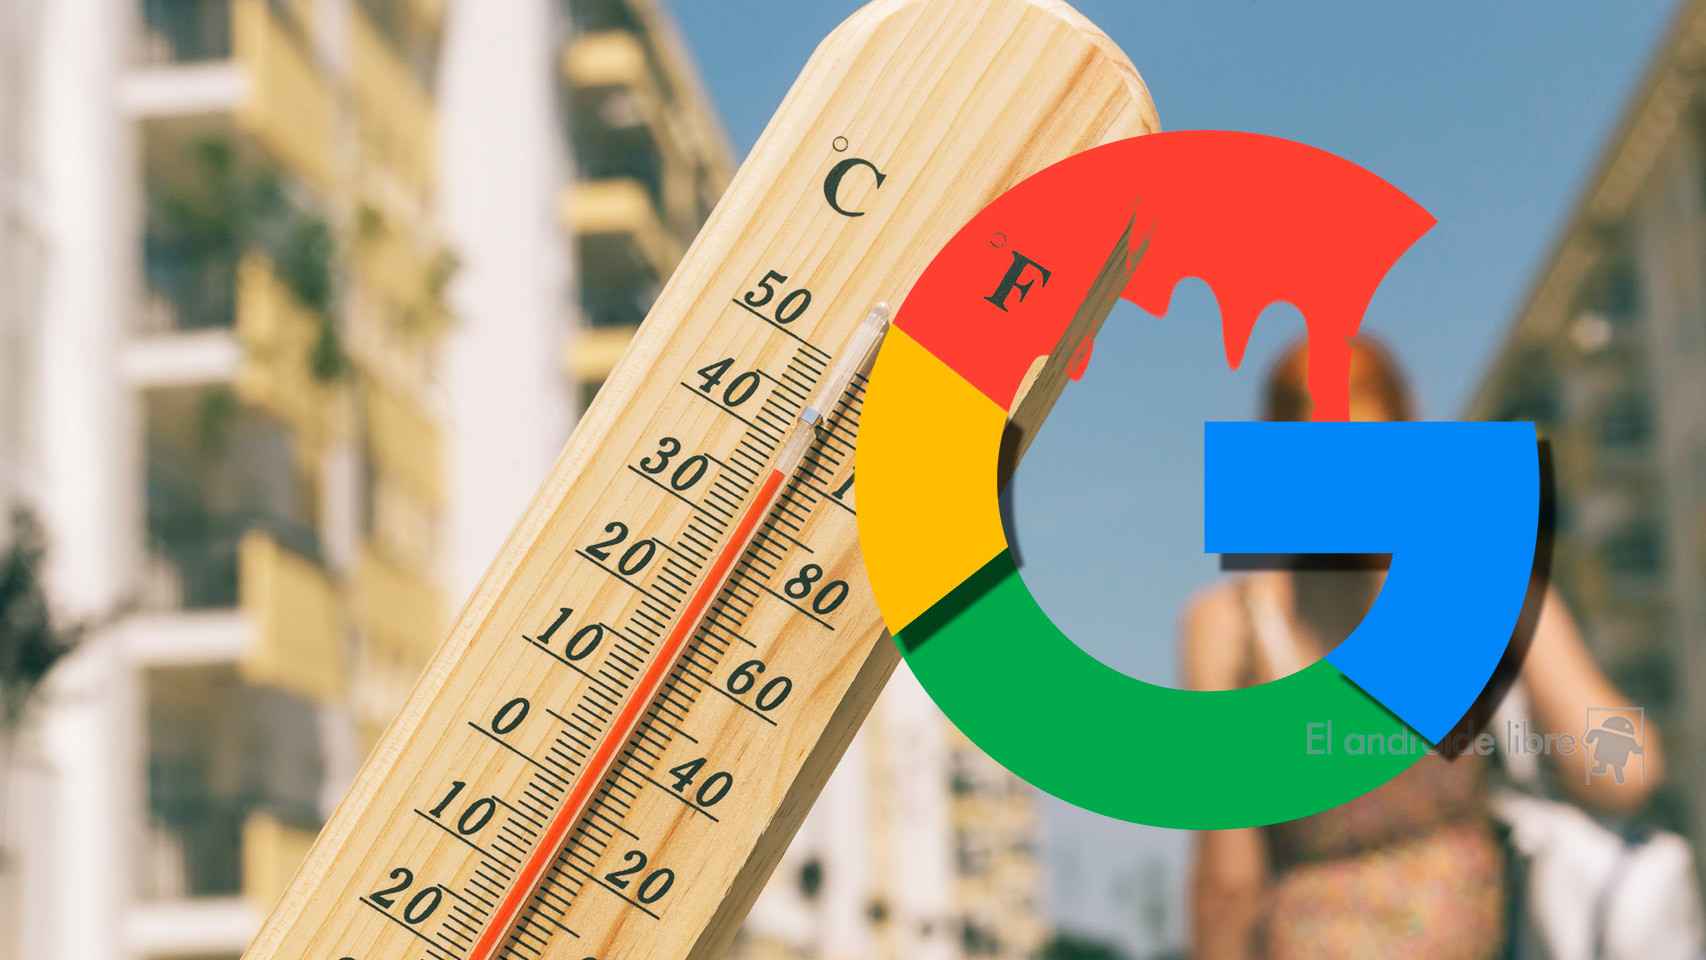 Google avisará desde su buscador de las próximas olas de calor